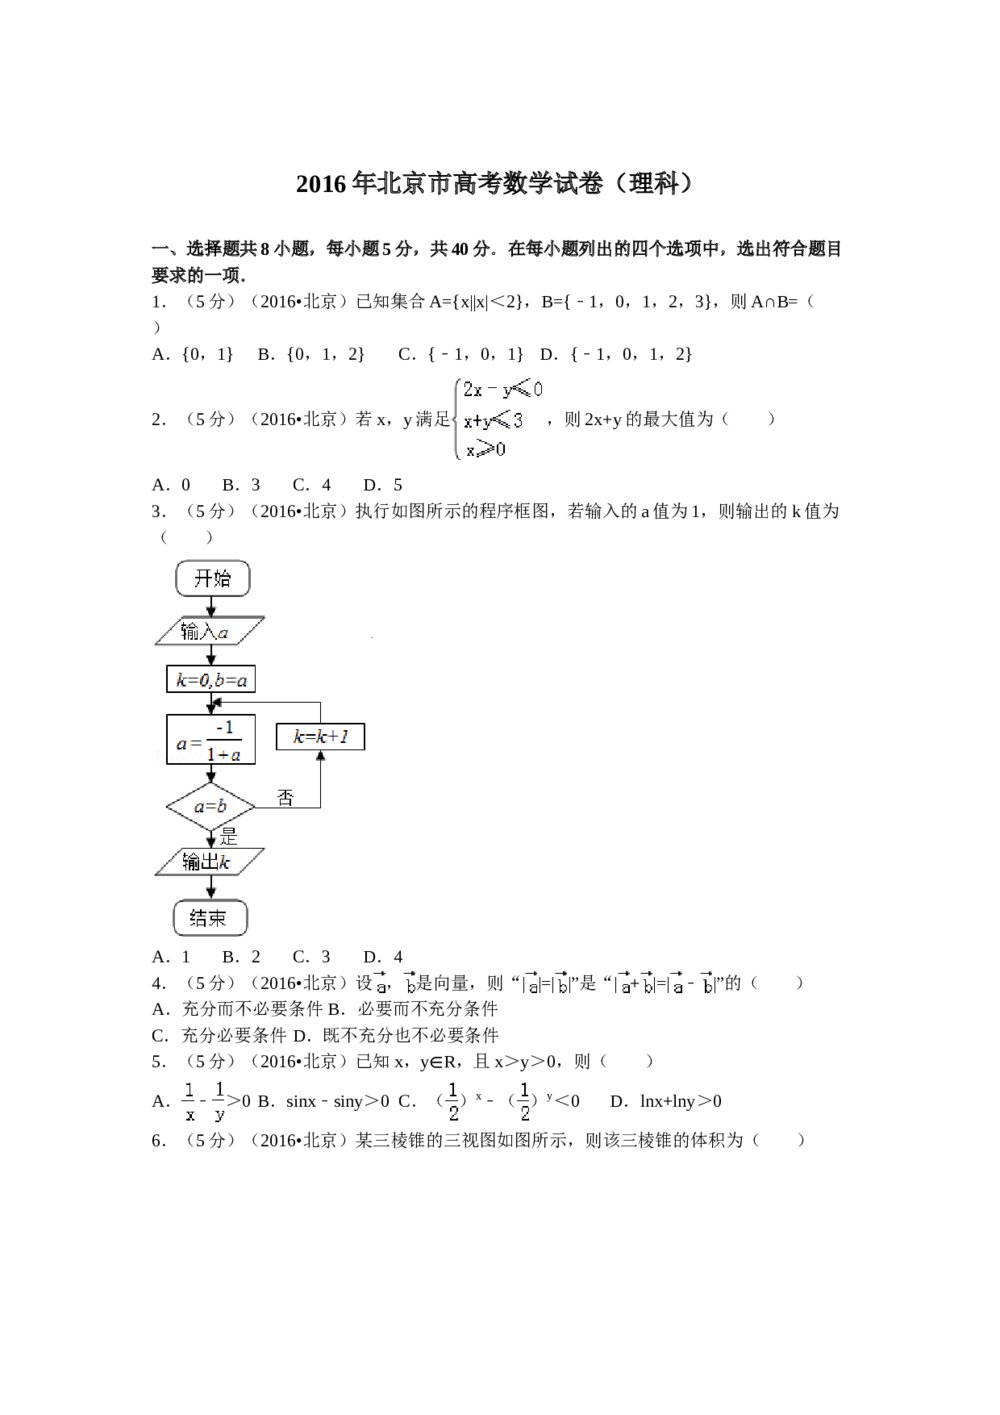 2016年北京高考(理科)数学试卷+答案解析